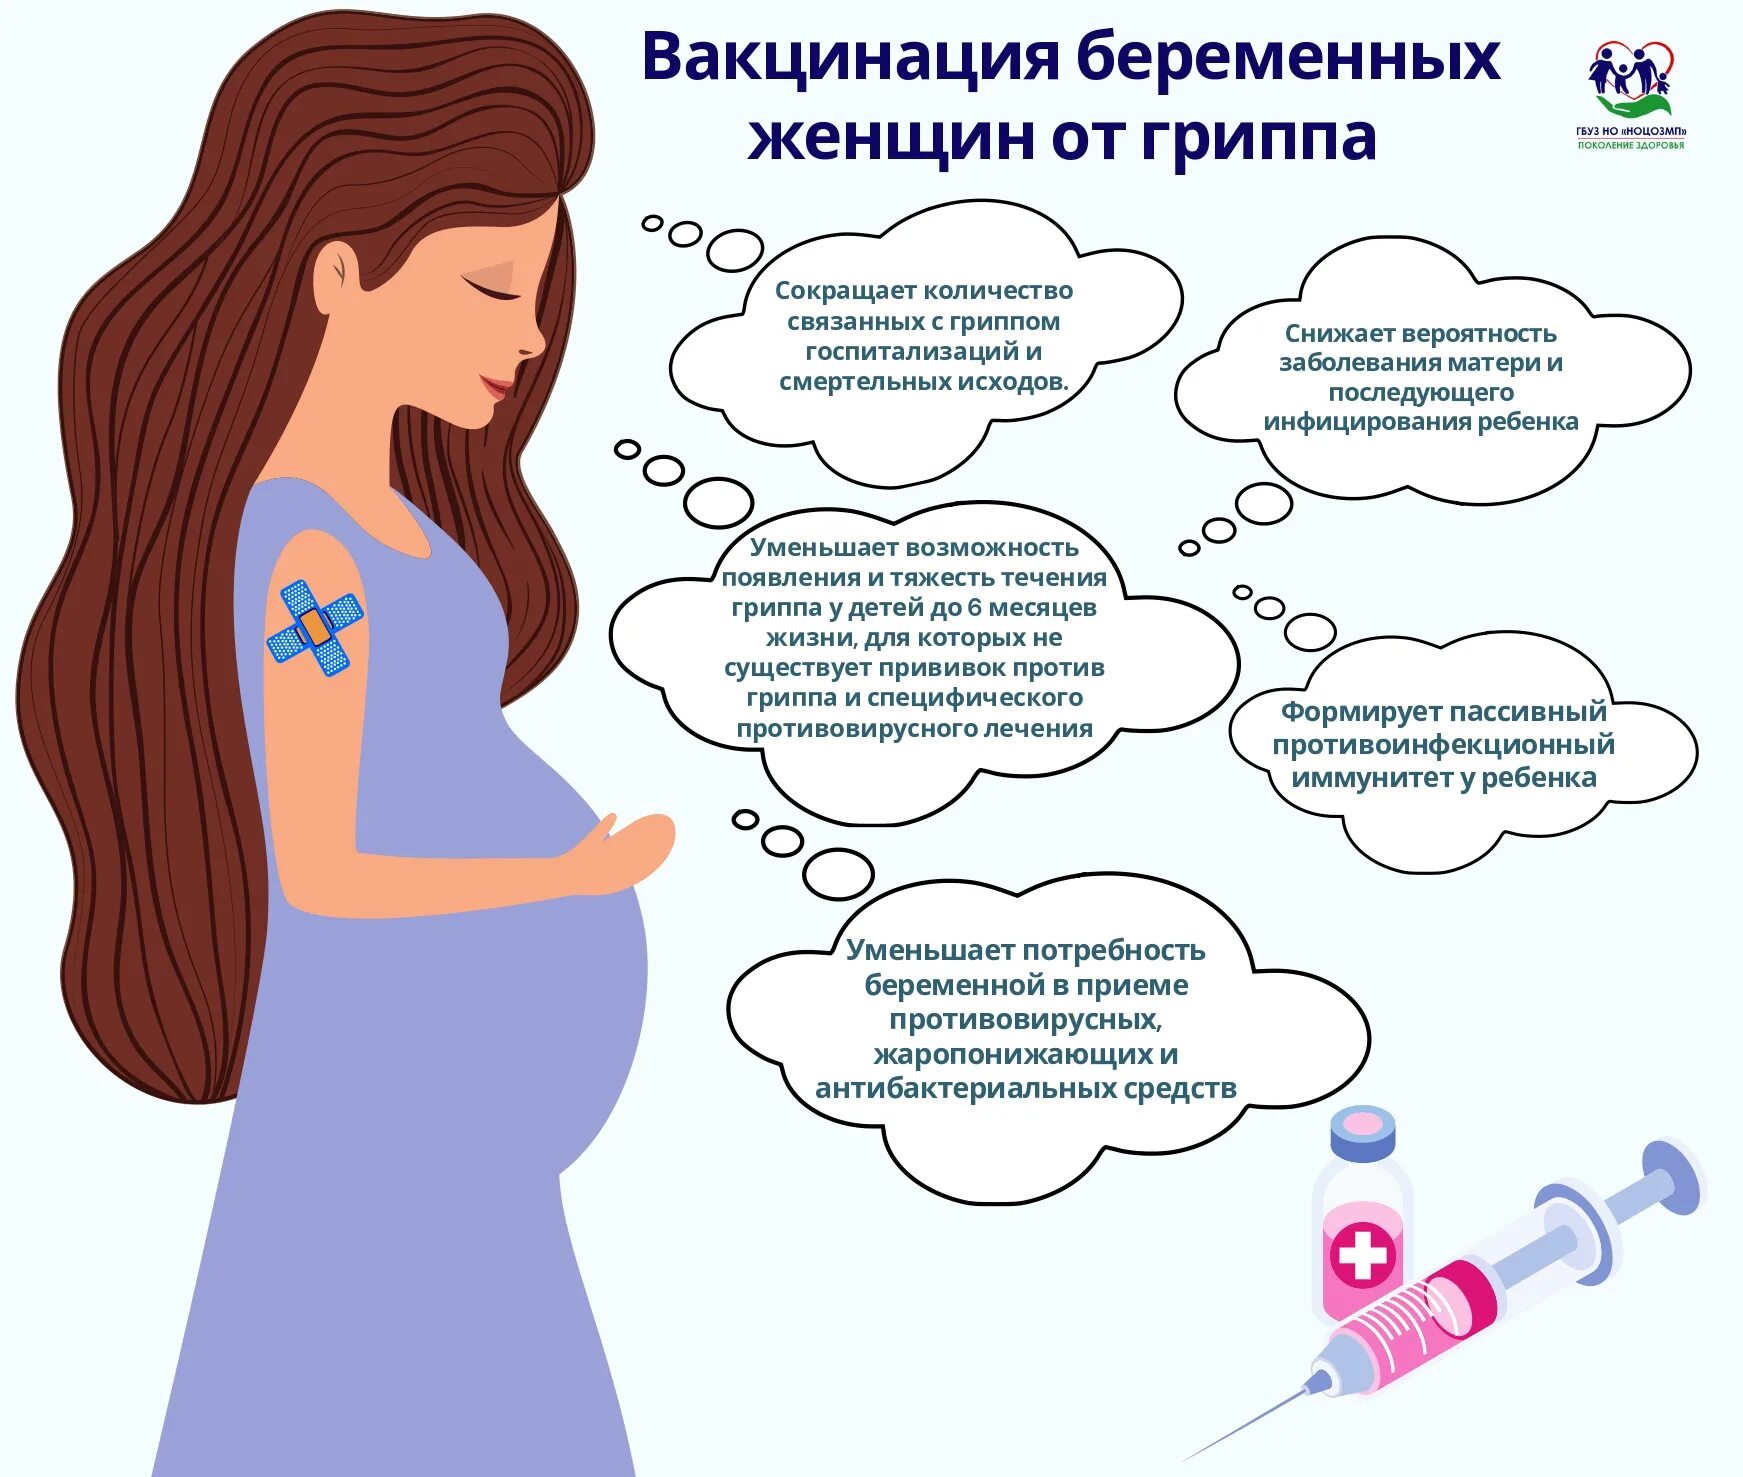 Вакцинация беременных. Вакцинация беременной памятка. Памятка для переменных. Памятка для беременных женщин. Можно ли во время гриппа